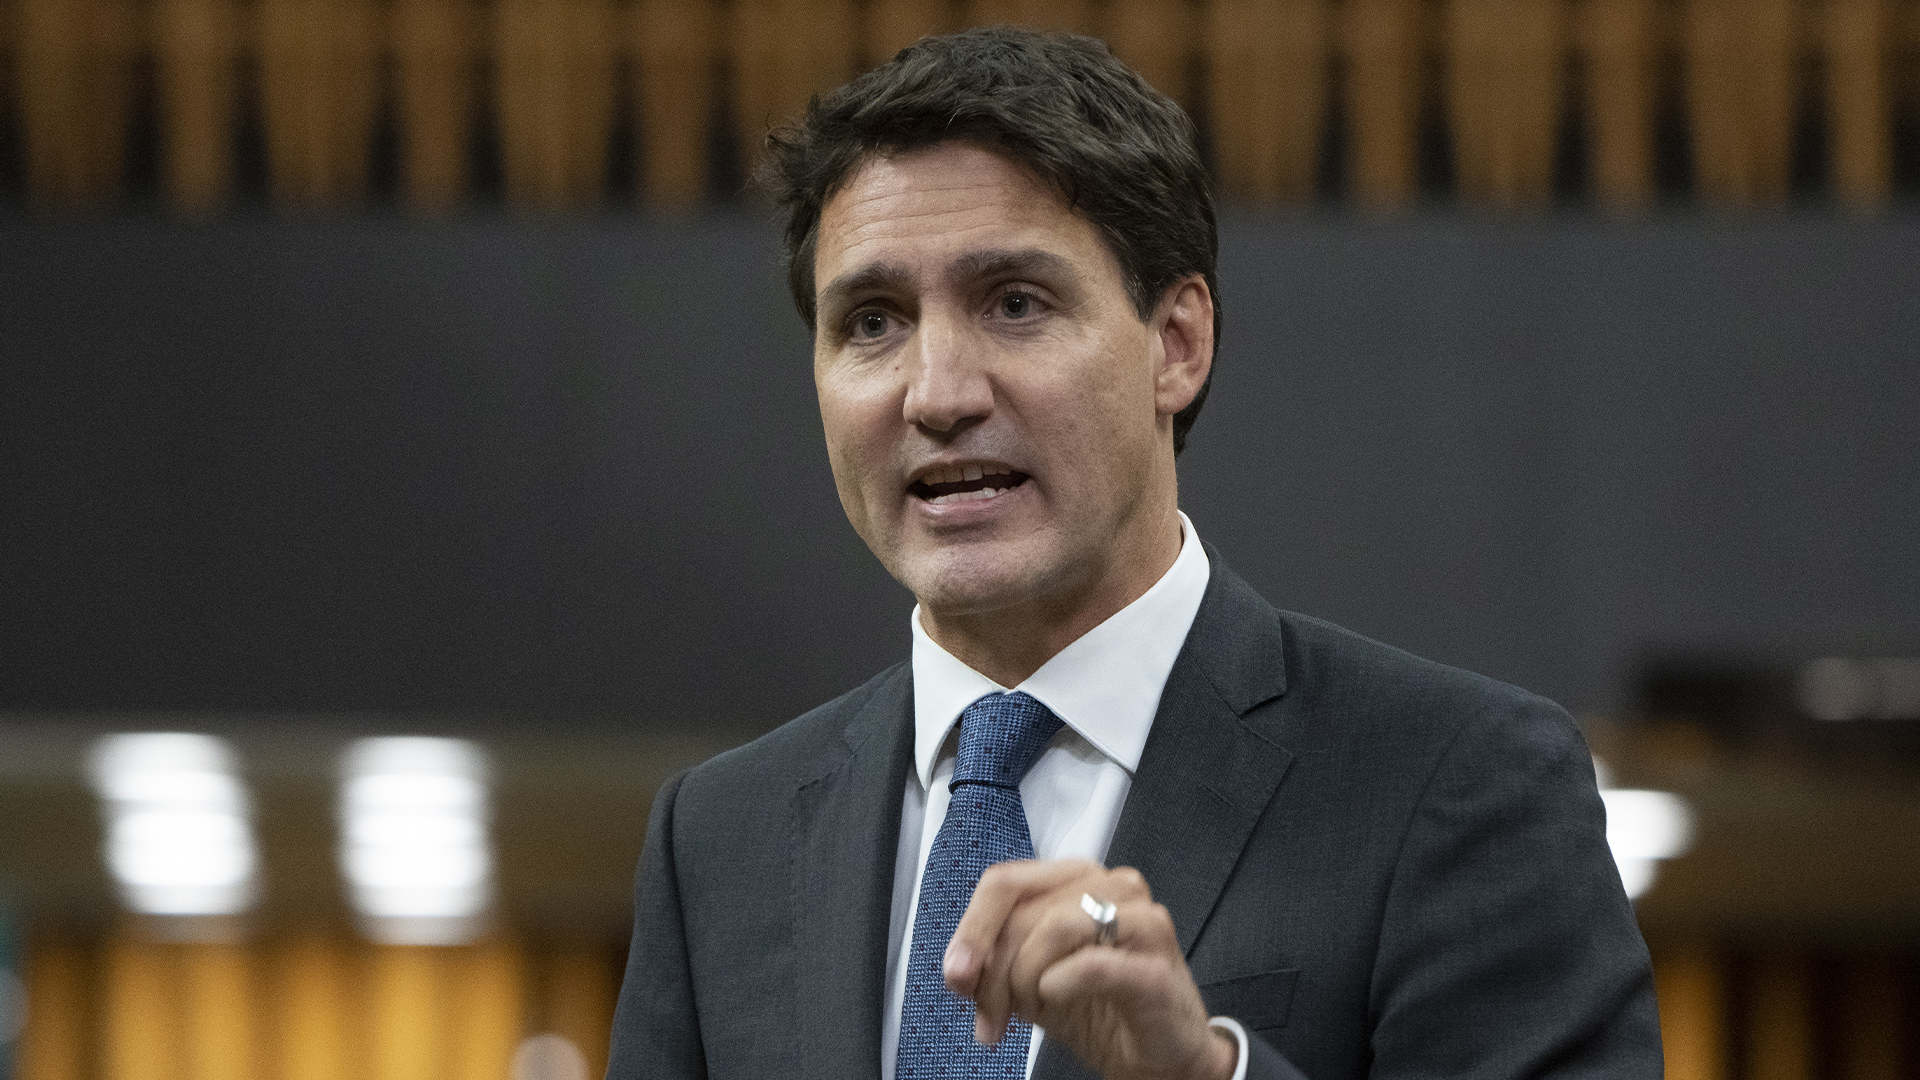 Le premier ministre Justin Trudeau a accepté de laisser expirer le 30 septembre le décret imposant des exigences de vaccination contre la COVID-19 à la frontière canadienne, selon deux sources gouvernementales de haut niveau.